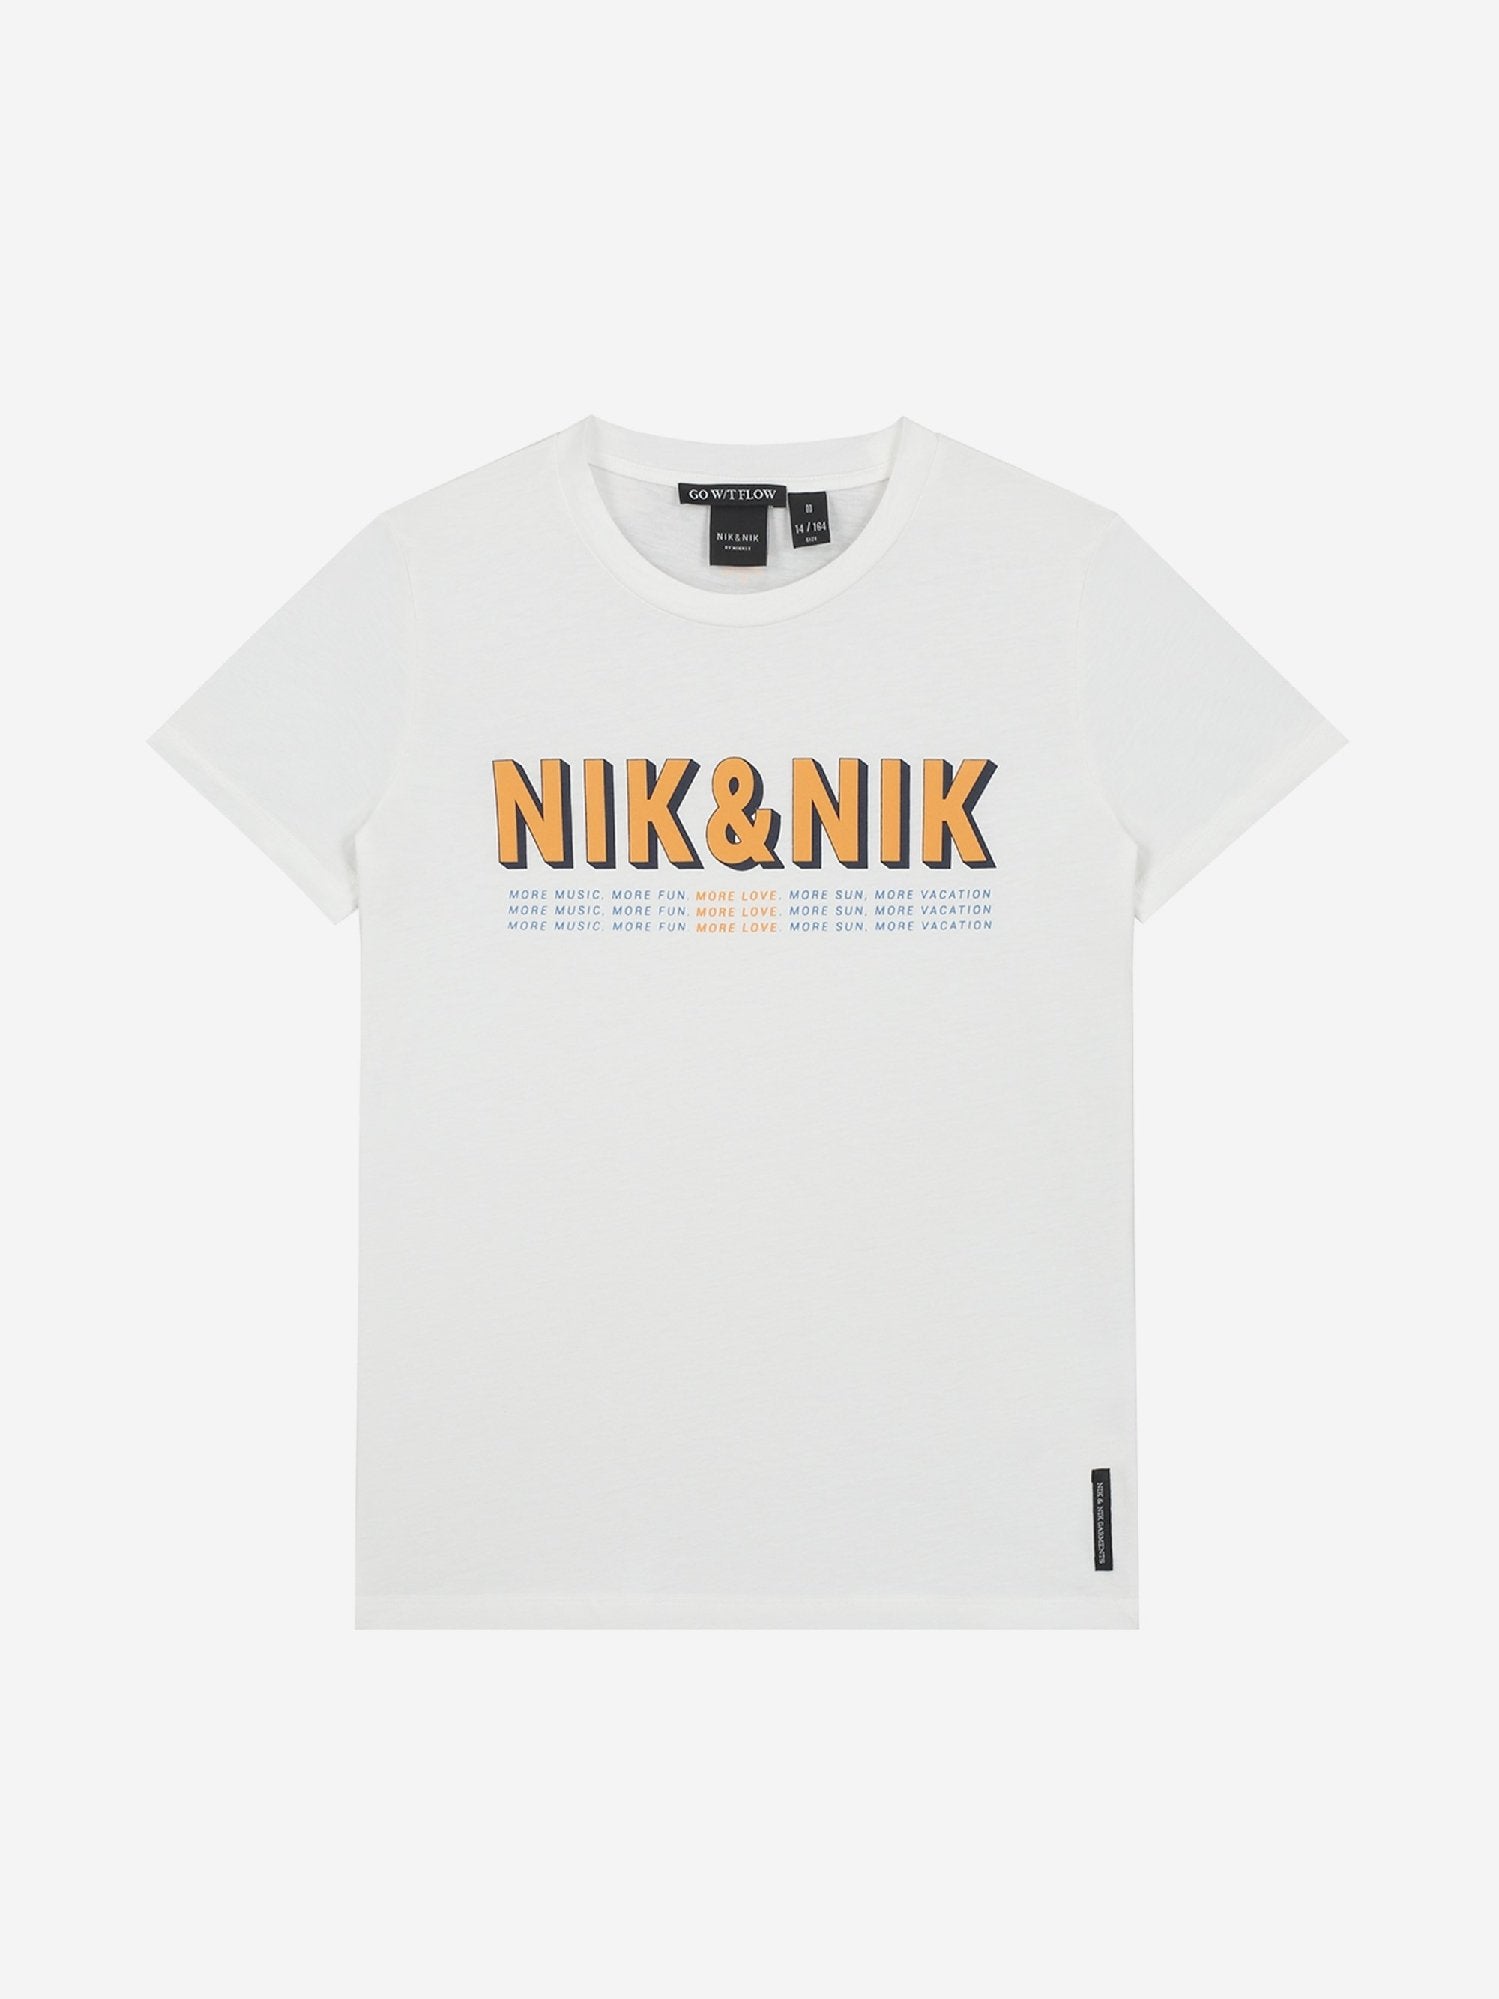 Meisjes More Love T-shirt van Nik & Nik in de kleur Off White in maat 176.